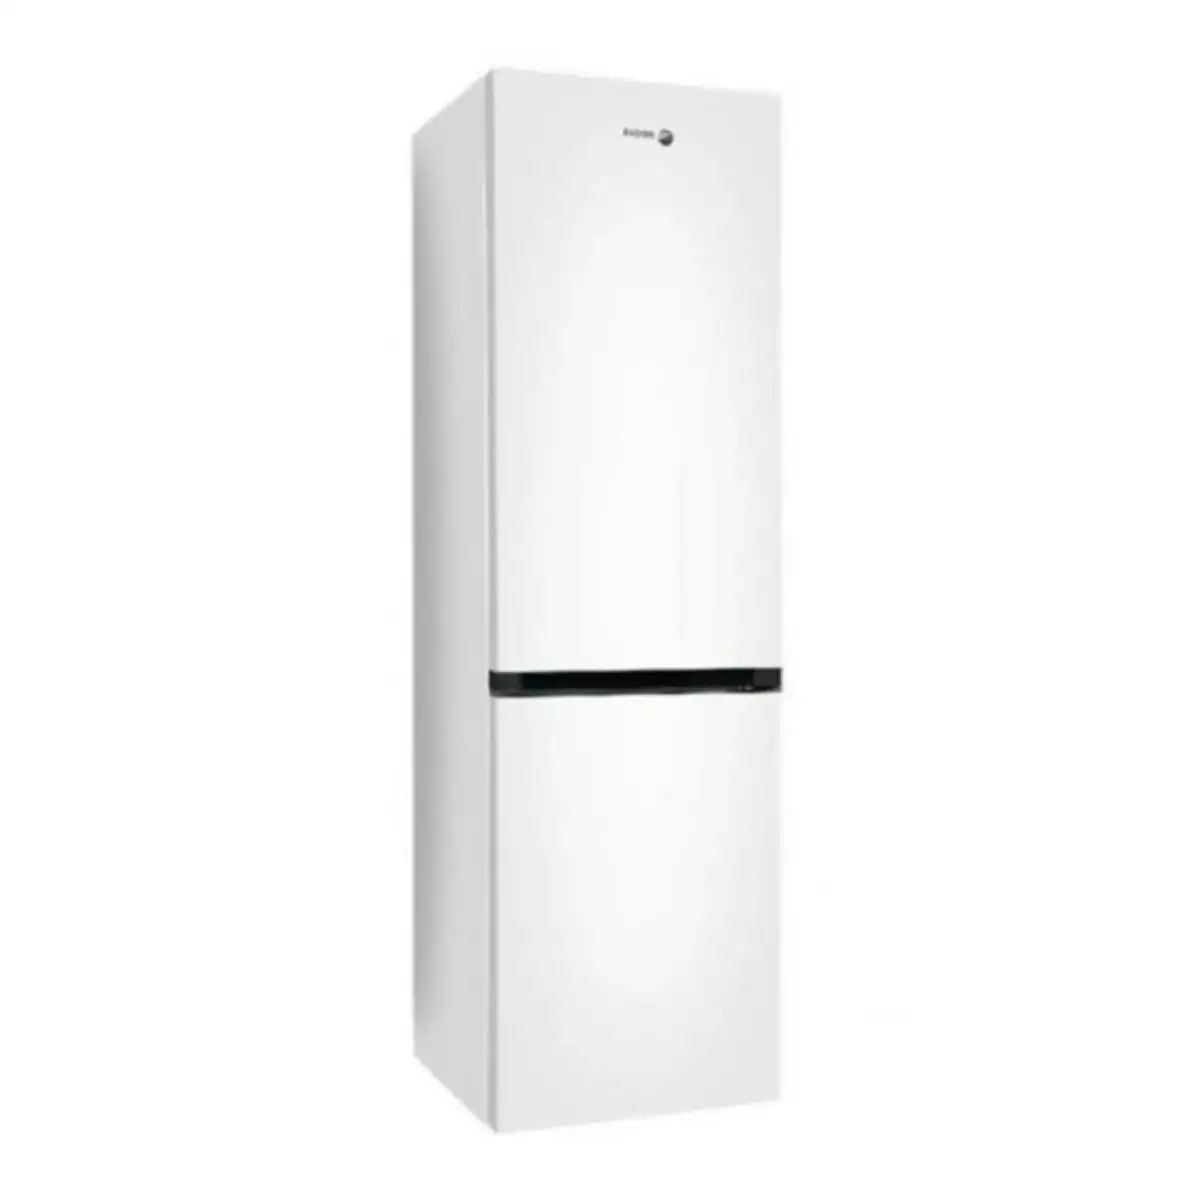 Refrigerateur fagor 3ffk6636 185 blanc 59 5 x 60 x 186 cm _4687. DIAYTAR SENEGAL - Votre Portail Vers l'Exclusivité. Explorez notre boutique en ligne pour trouver des produits uniques et exclusifs, conçus pour les amateurs de qualité.